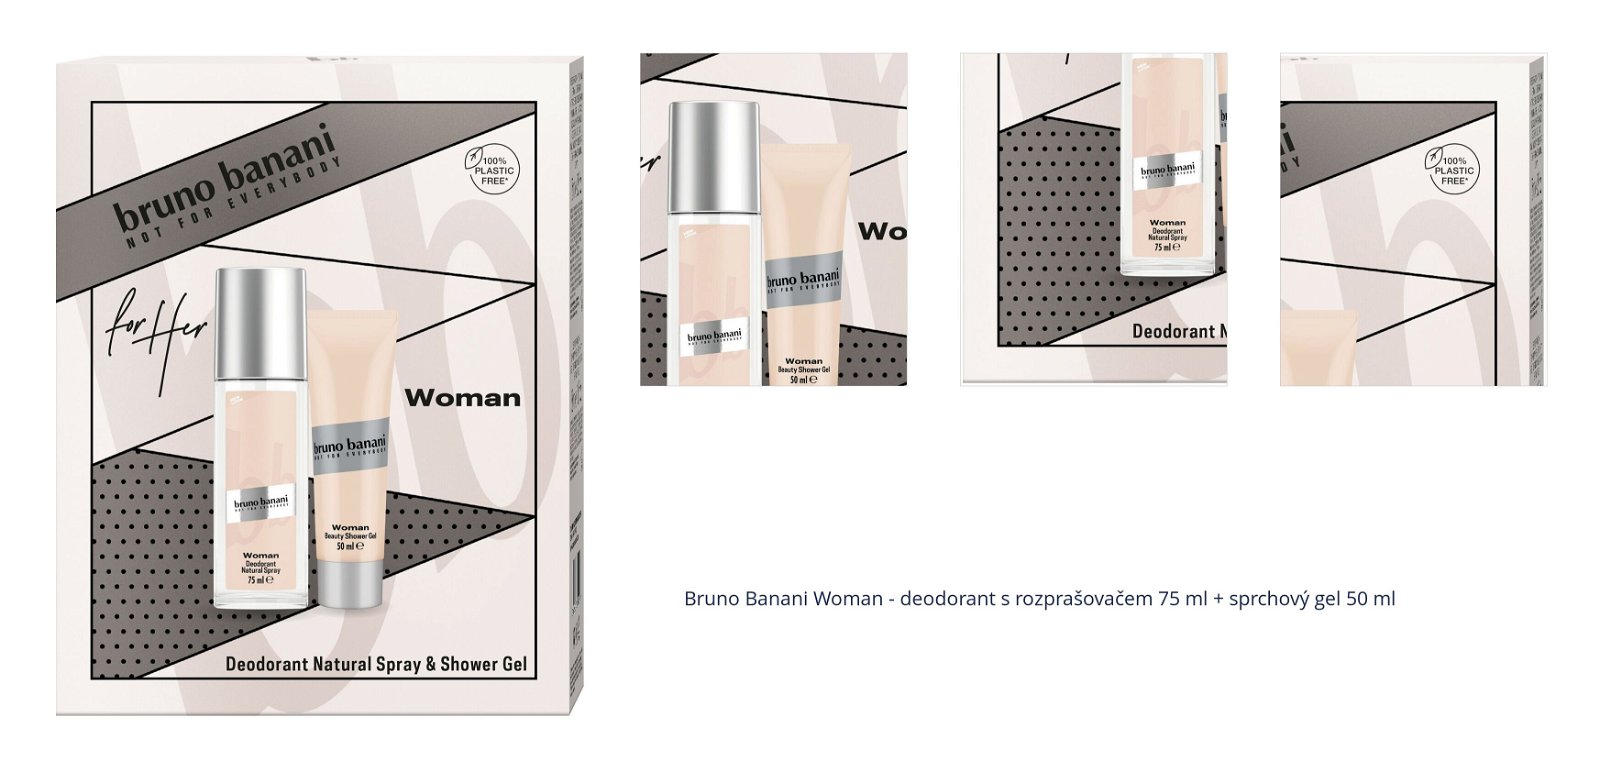 Bruno Banani Woman - deodorant s rozprašovačem 75 ml + sprchový gel 50 ml 1